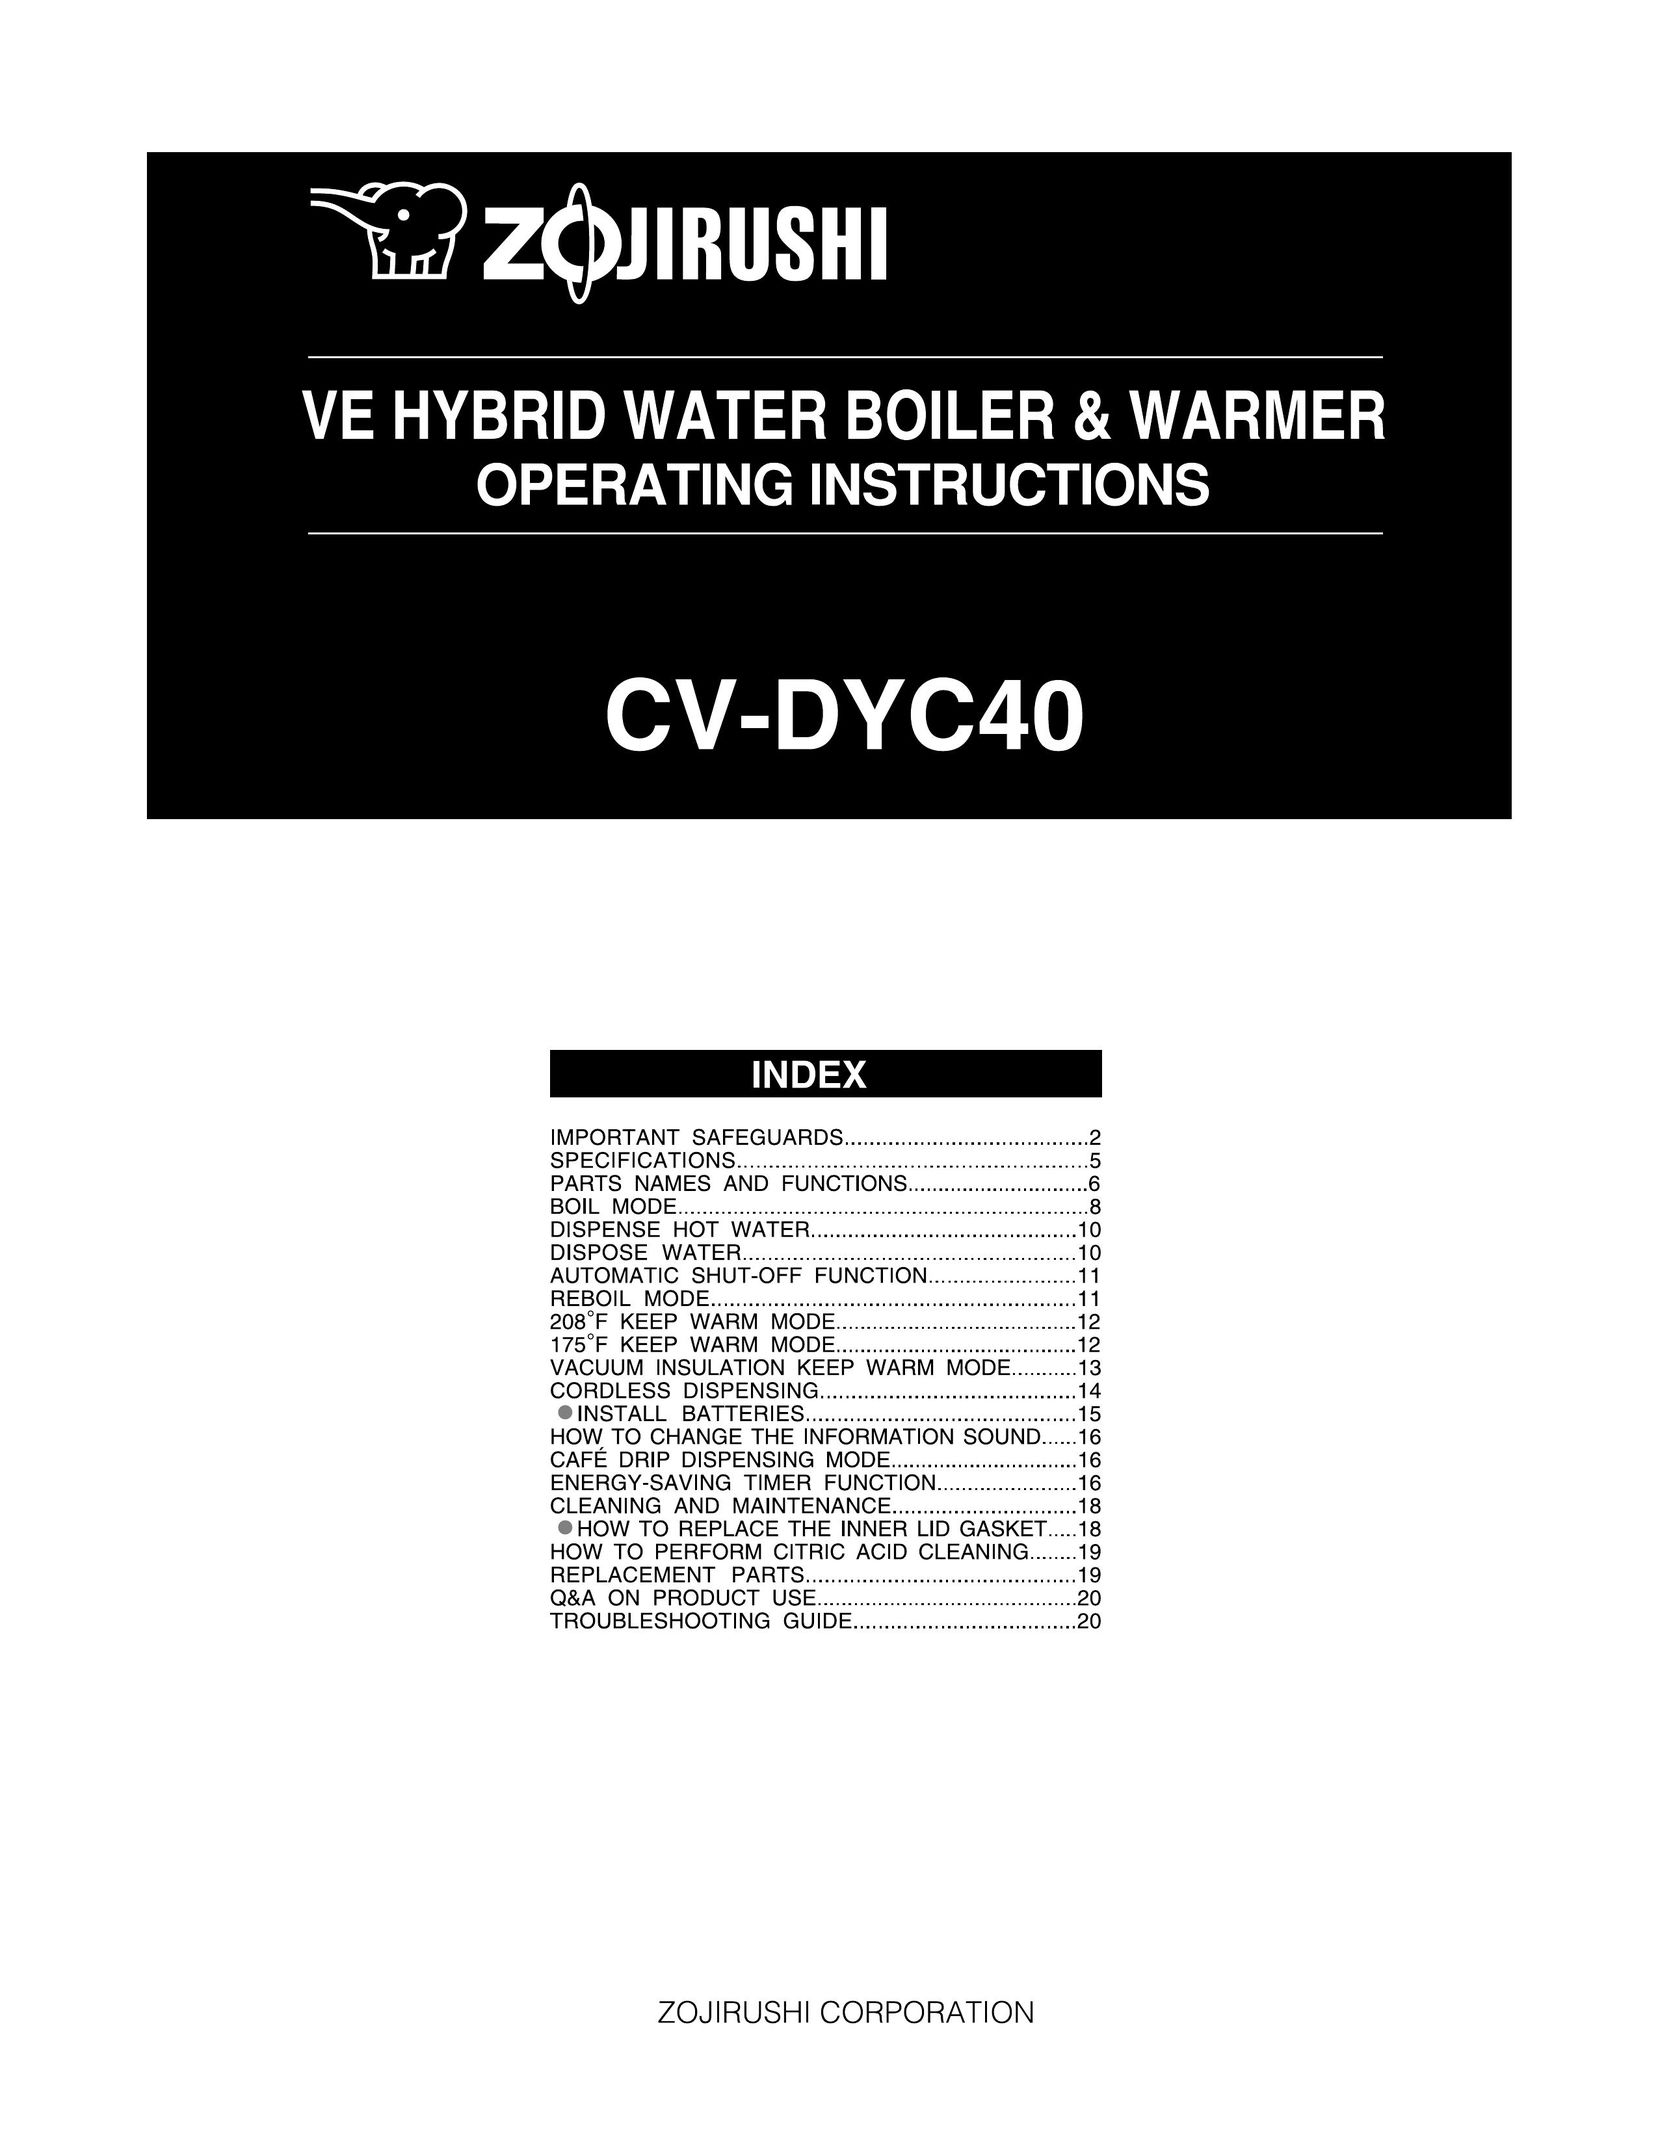 Zojirushi CV-DYC40 Water Heater User Manual